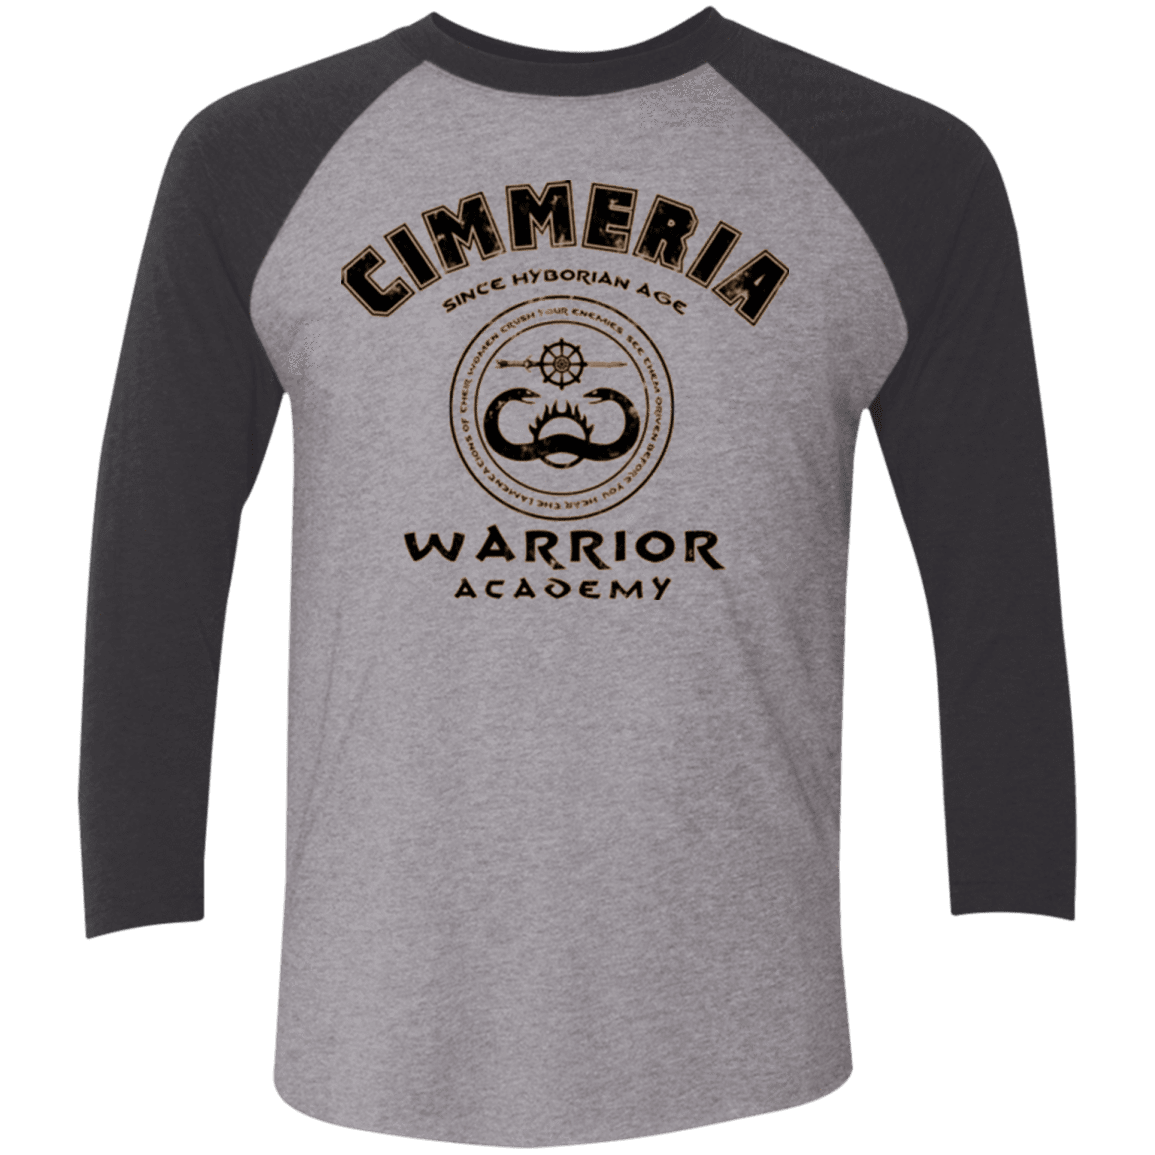 T-Shirts Premium Heather/ Vintage Black / X-Small Crimmeria Warrior academy Men's Triblend 3/4 Sleeve